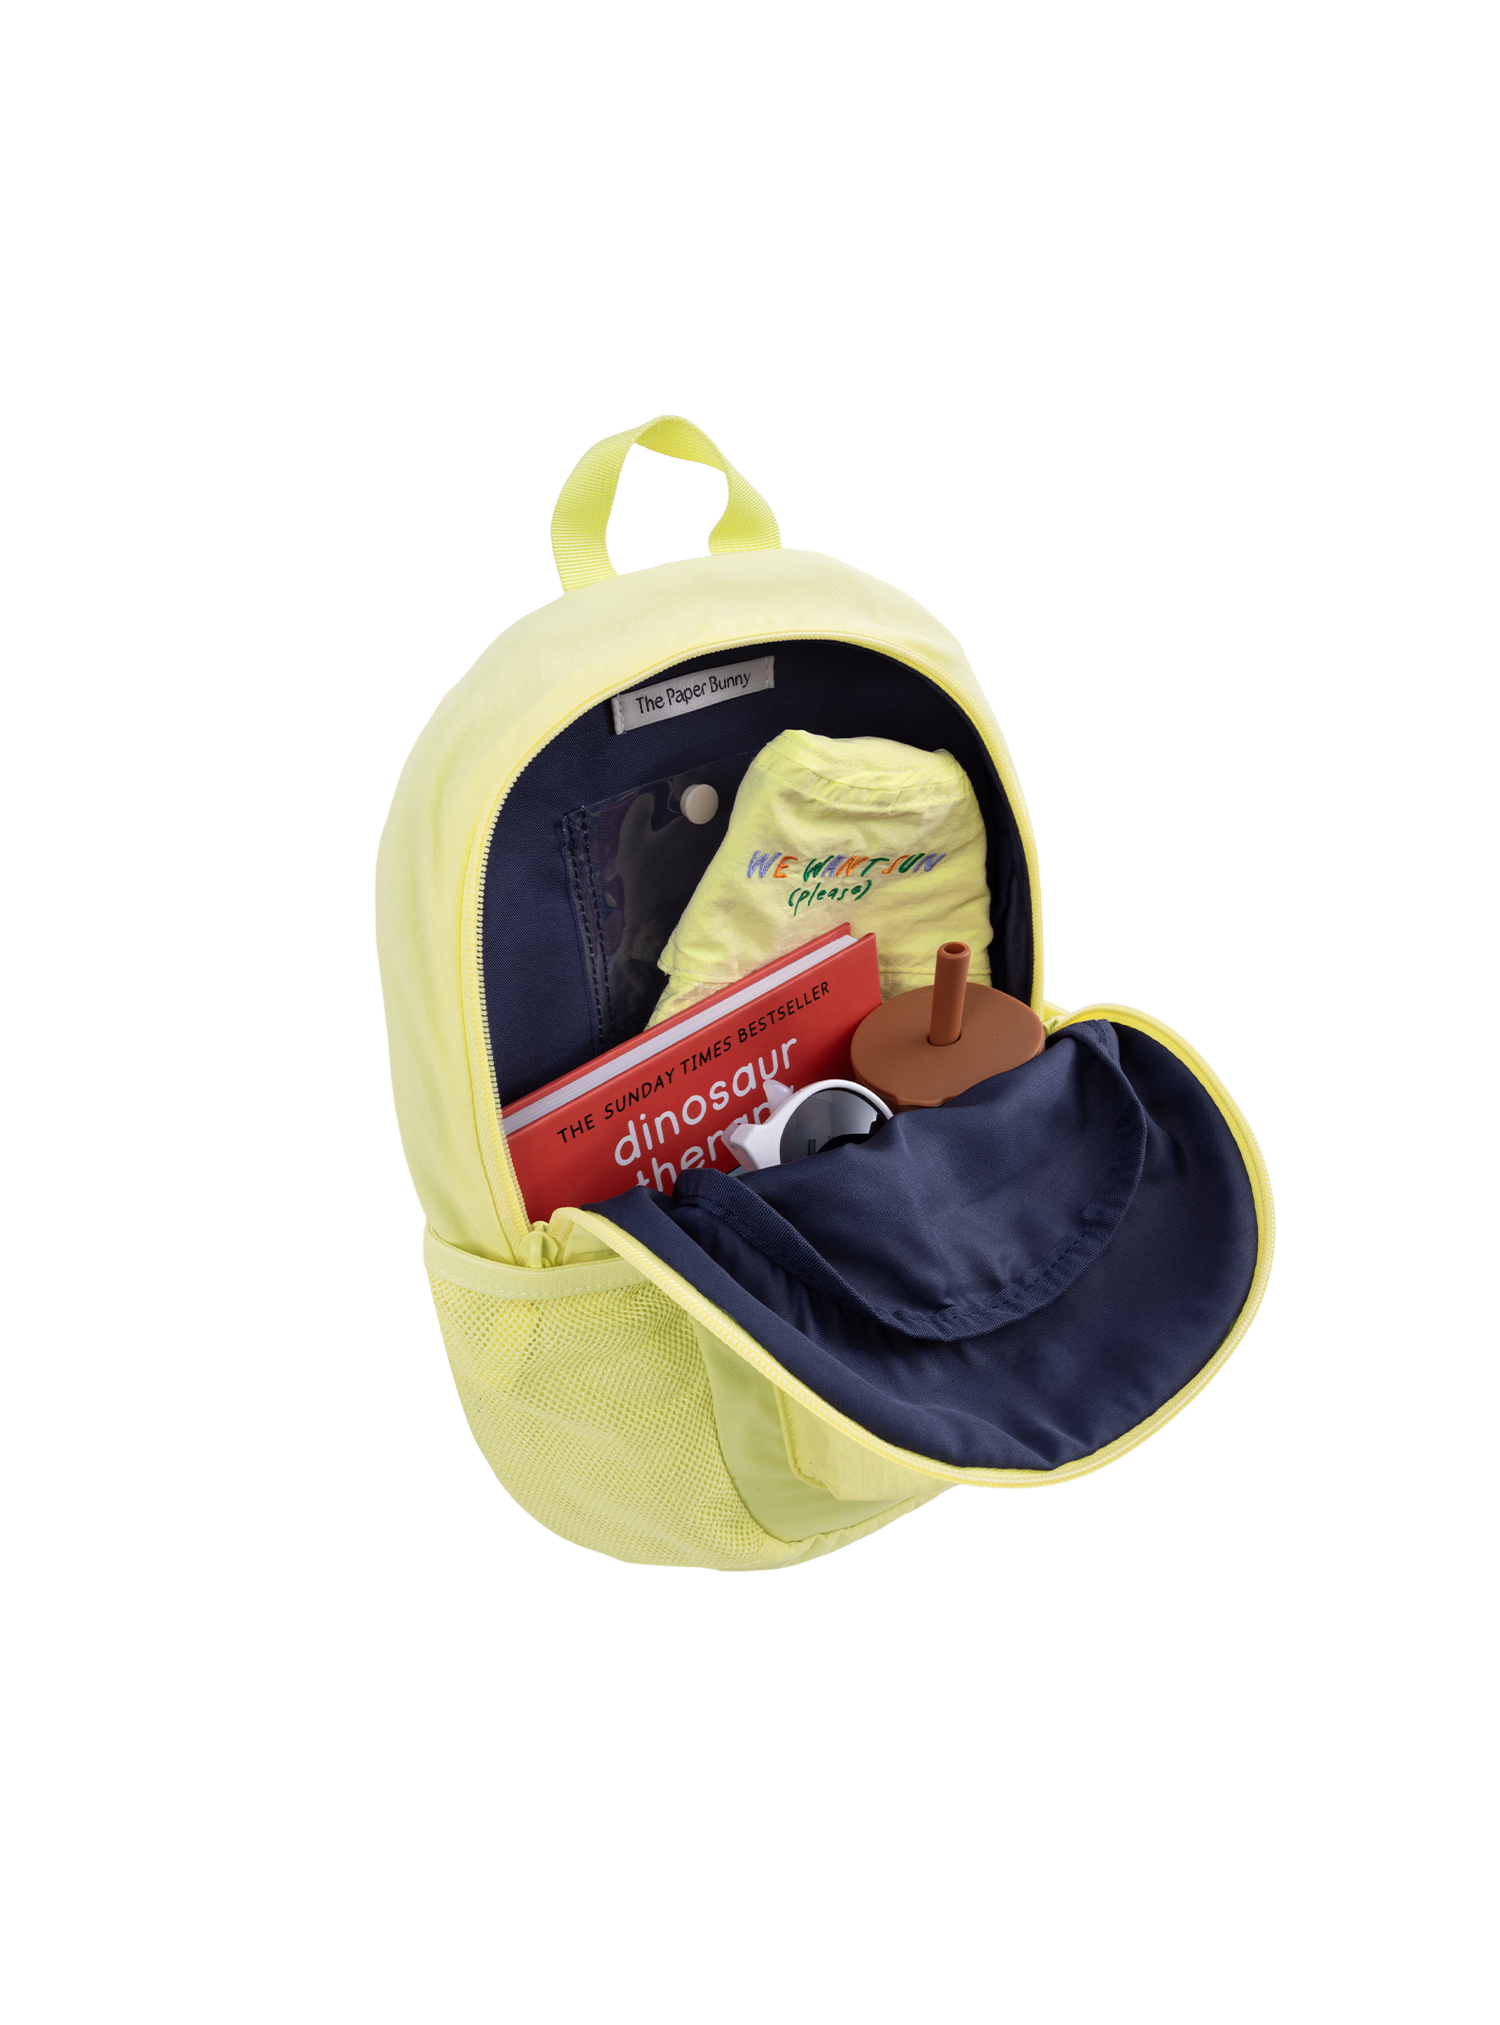 Kids Backpack (Lemon)